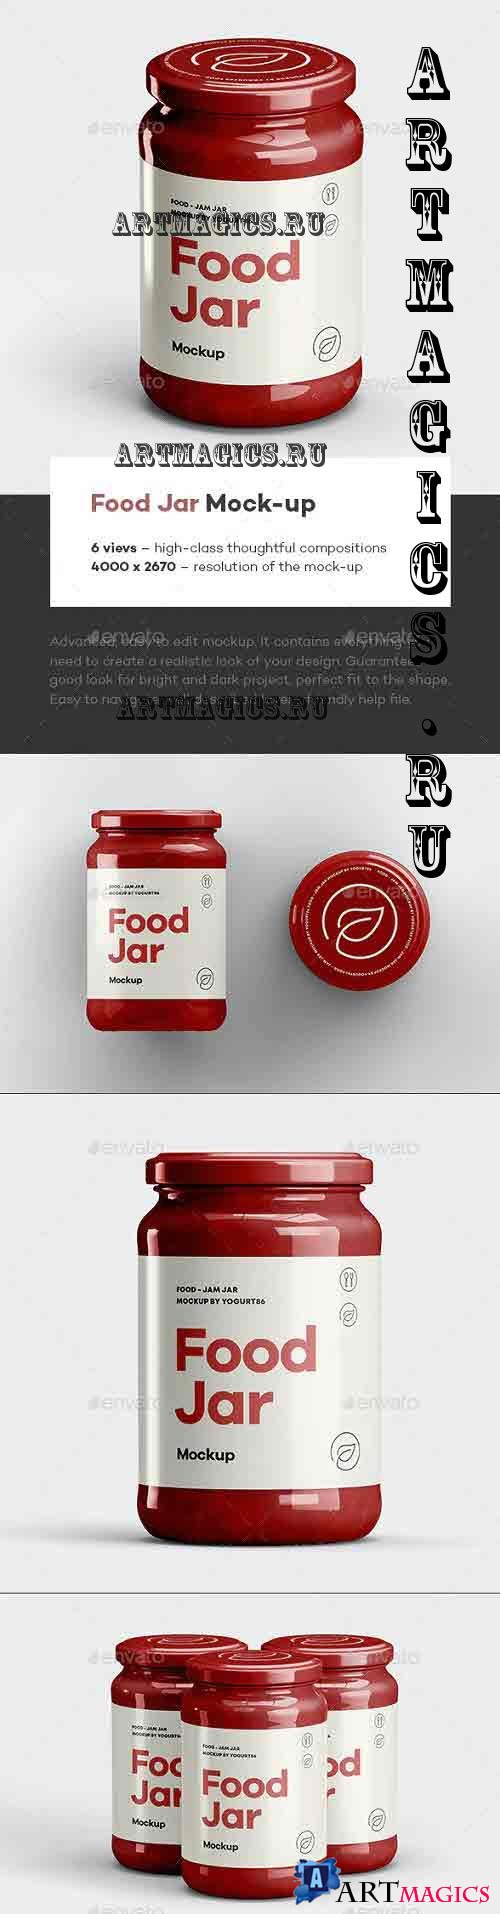 Food Jar Mock-up - 39636031